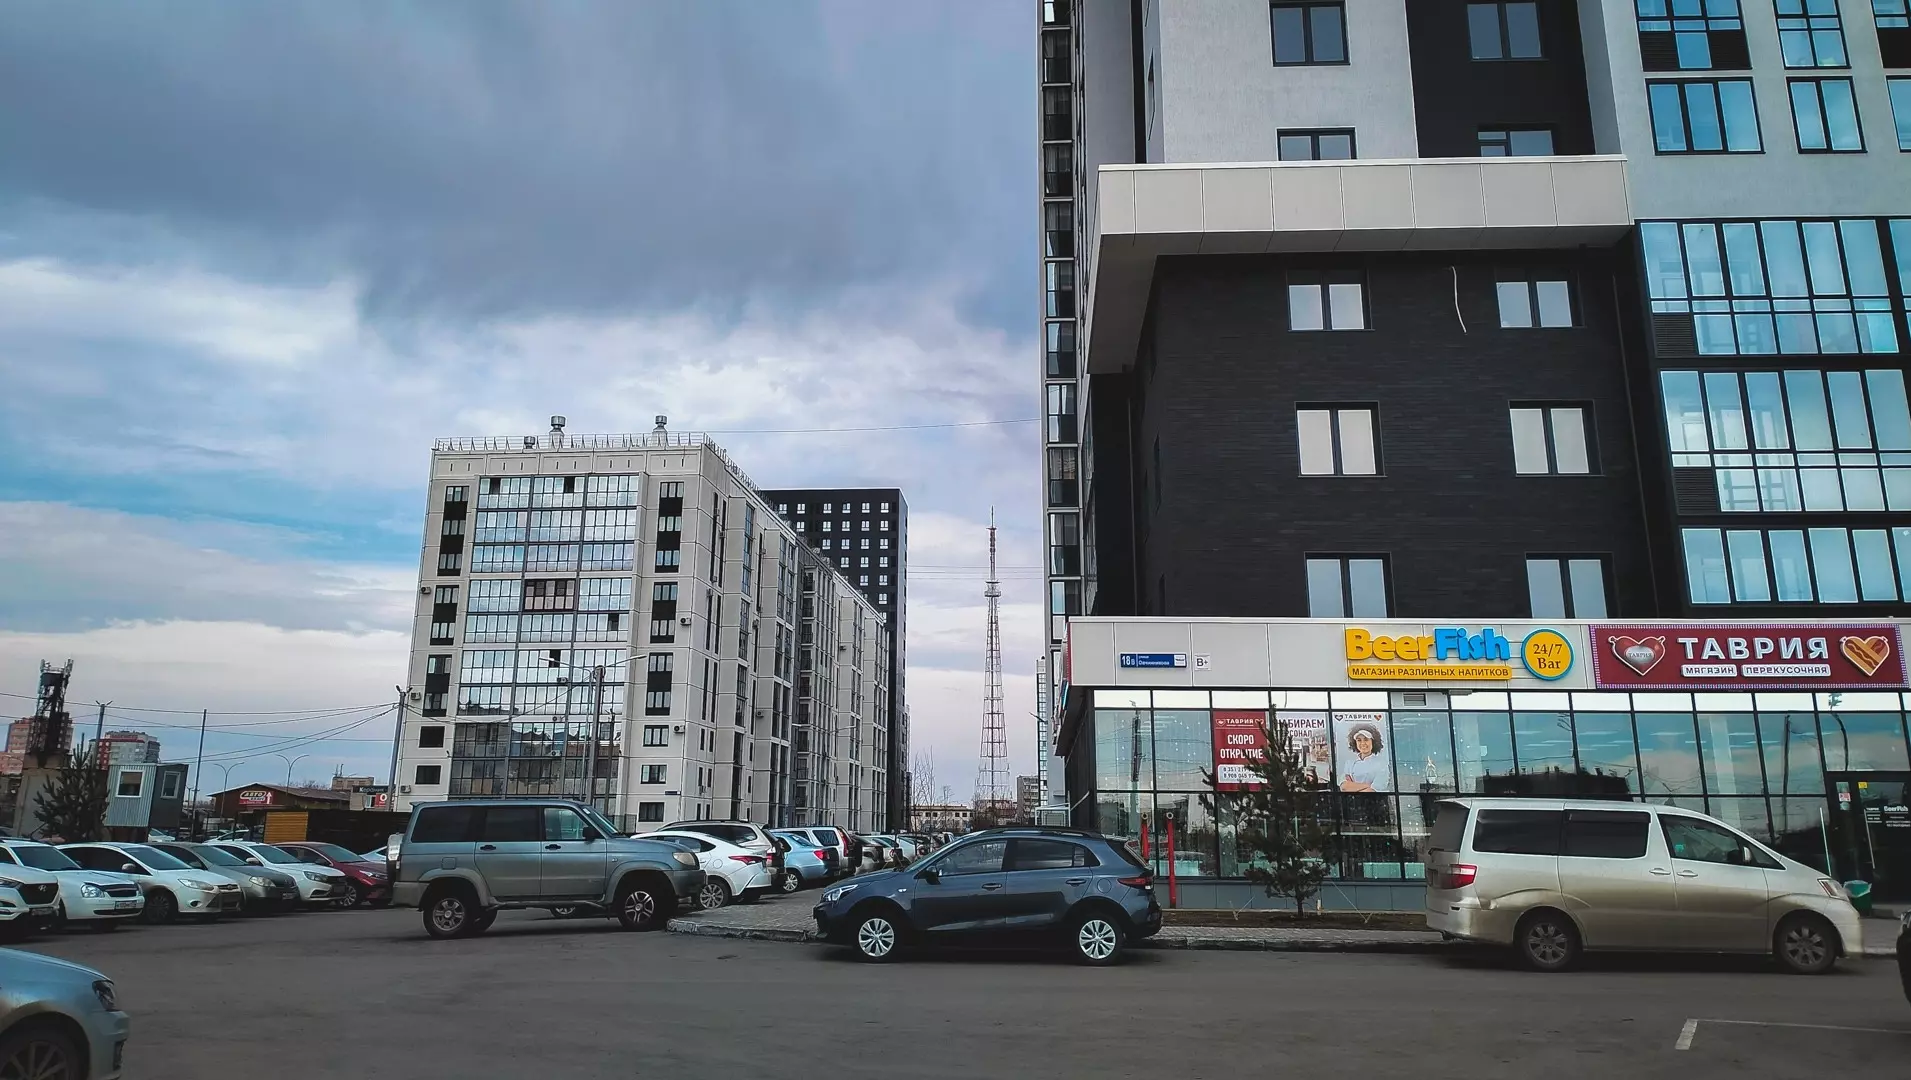 Жители Екатеринбурга пожаловались на шумных посетителей пивной лавки